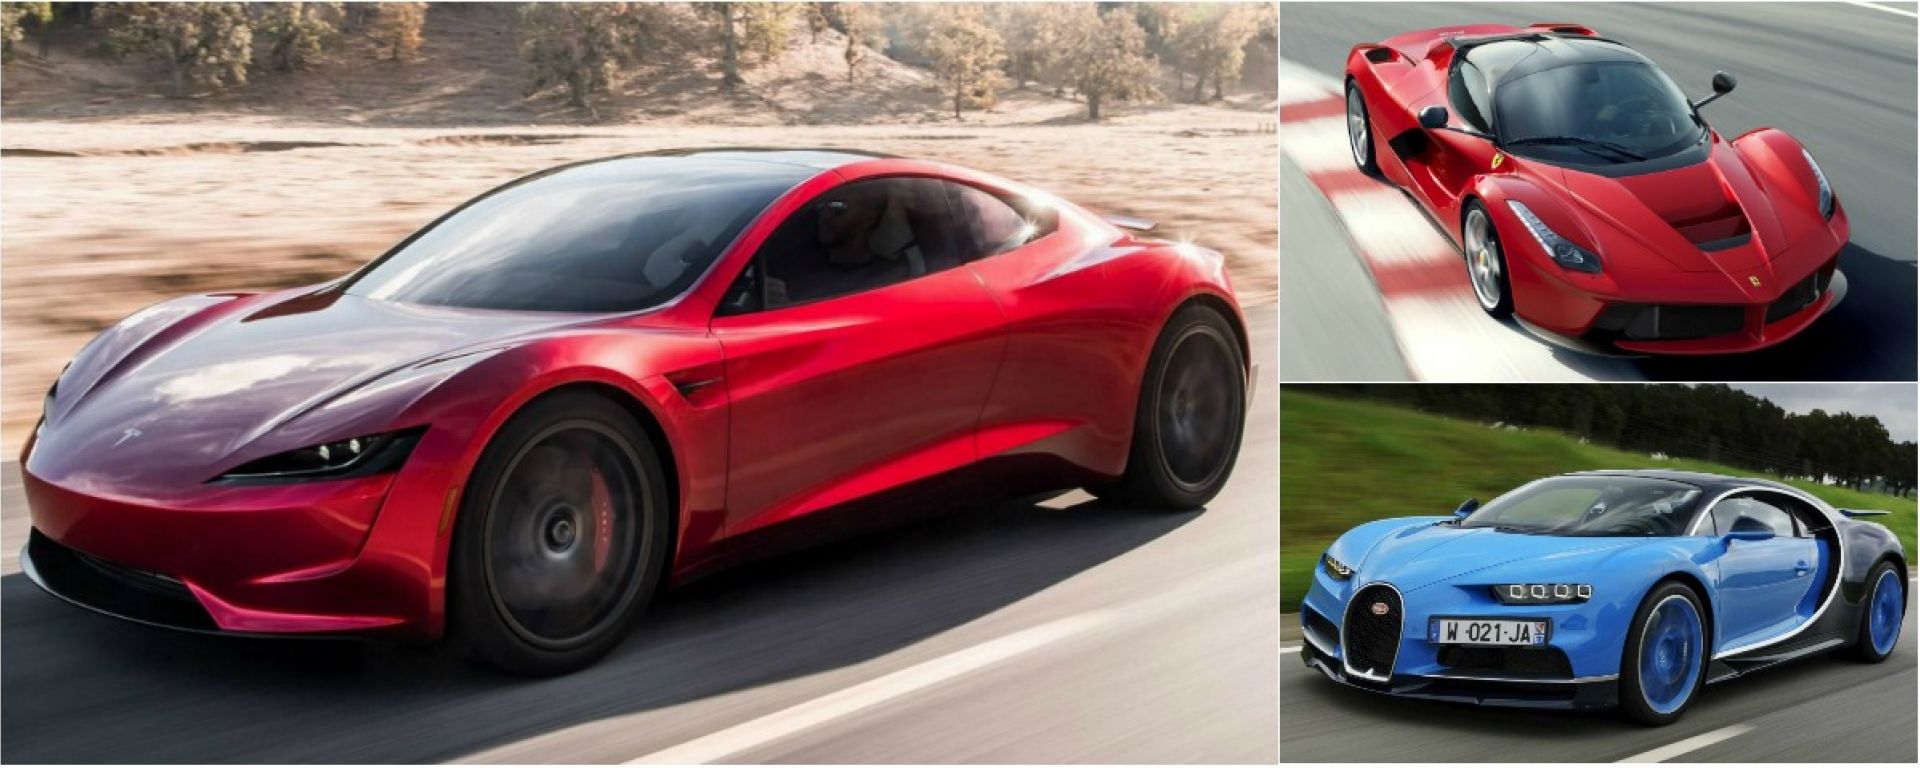 Tesla Roadster 2020 vs Lamborghini, Ferrari & C: drag race ...